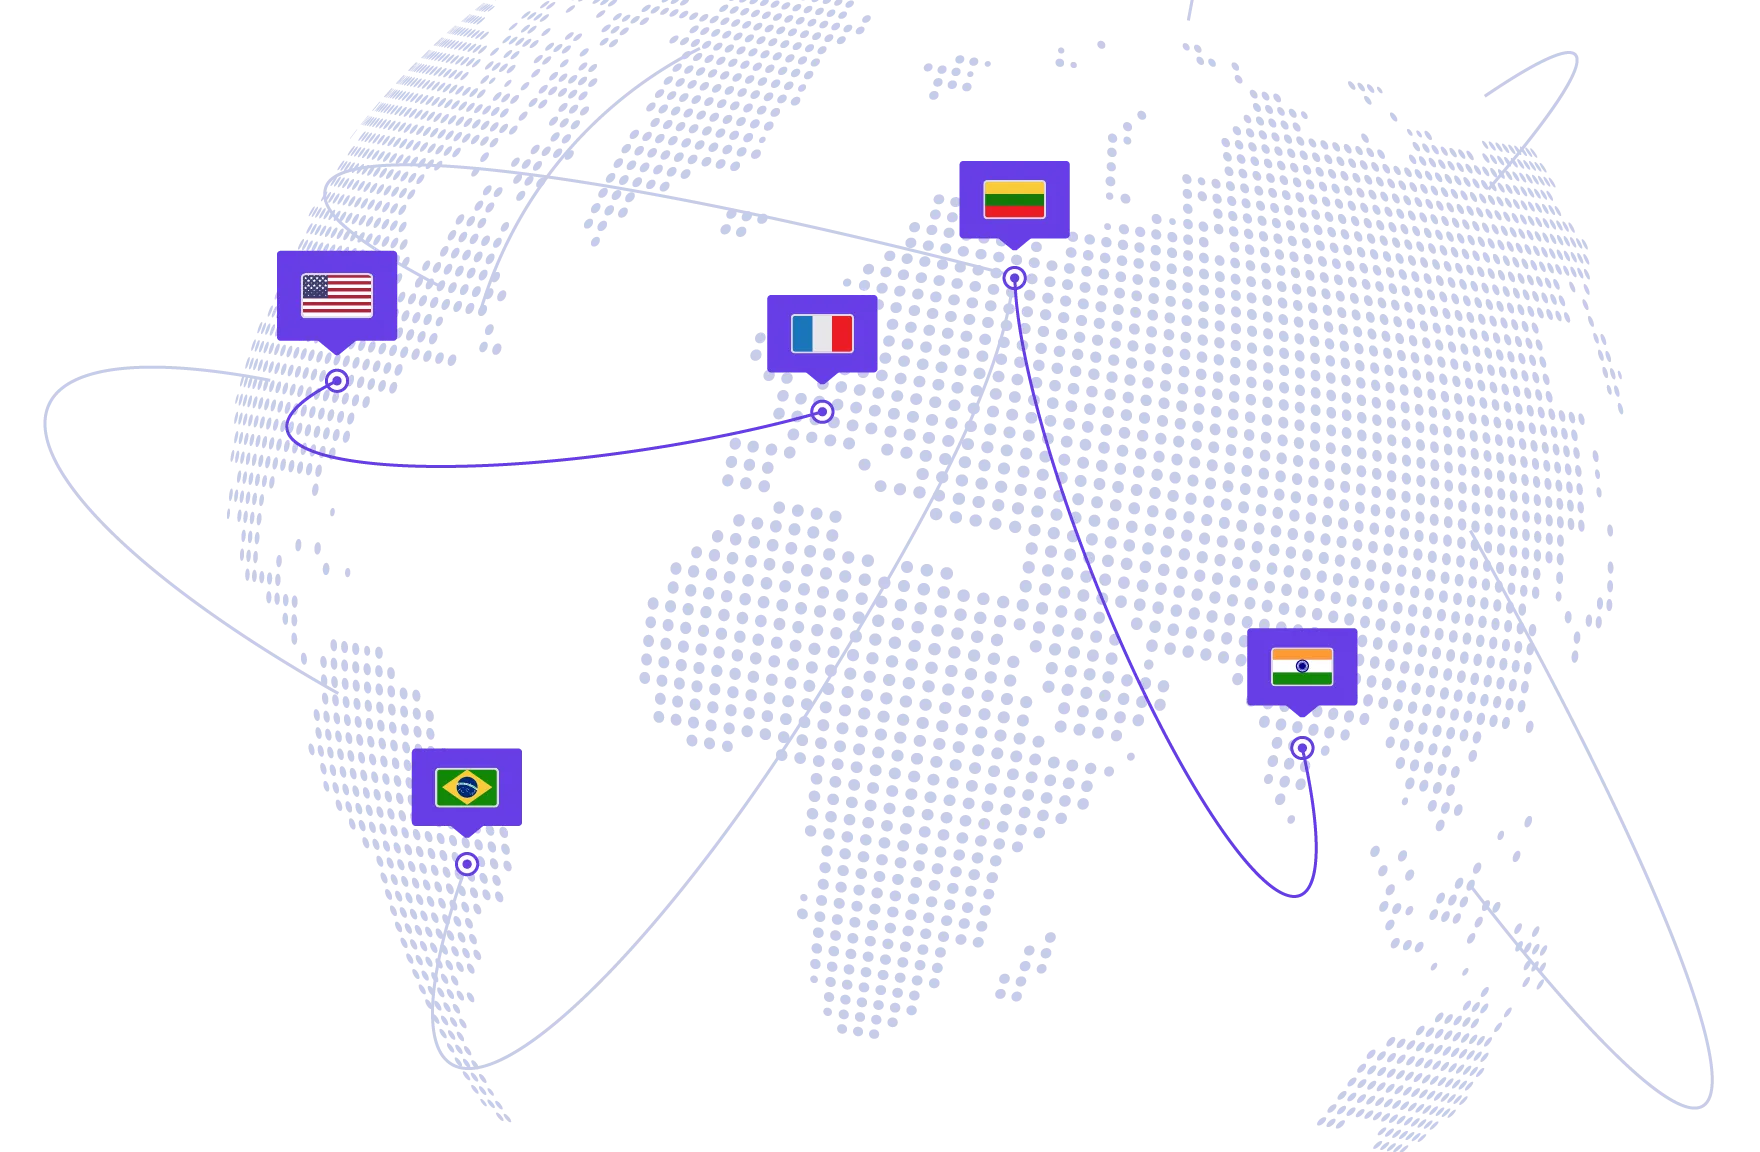 Centros de datos global